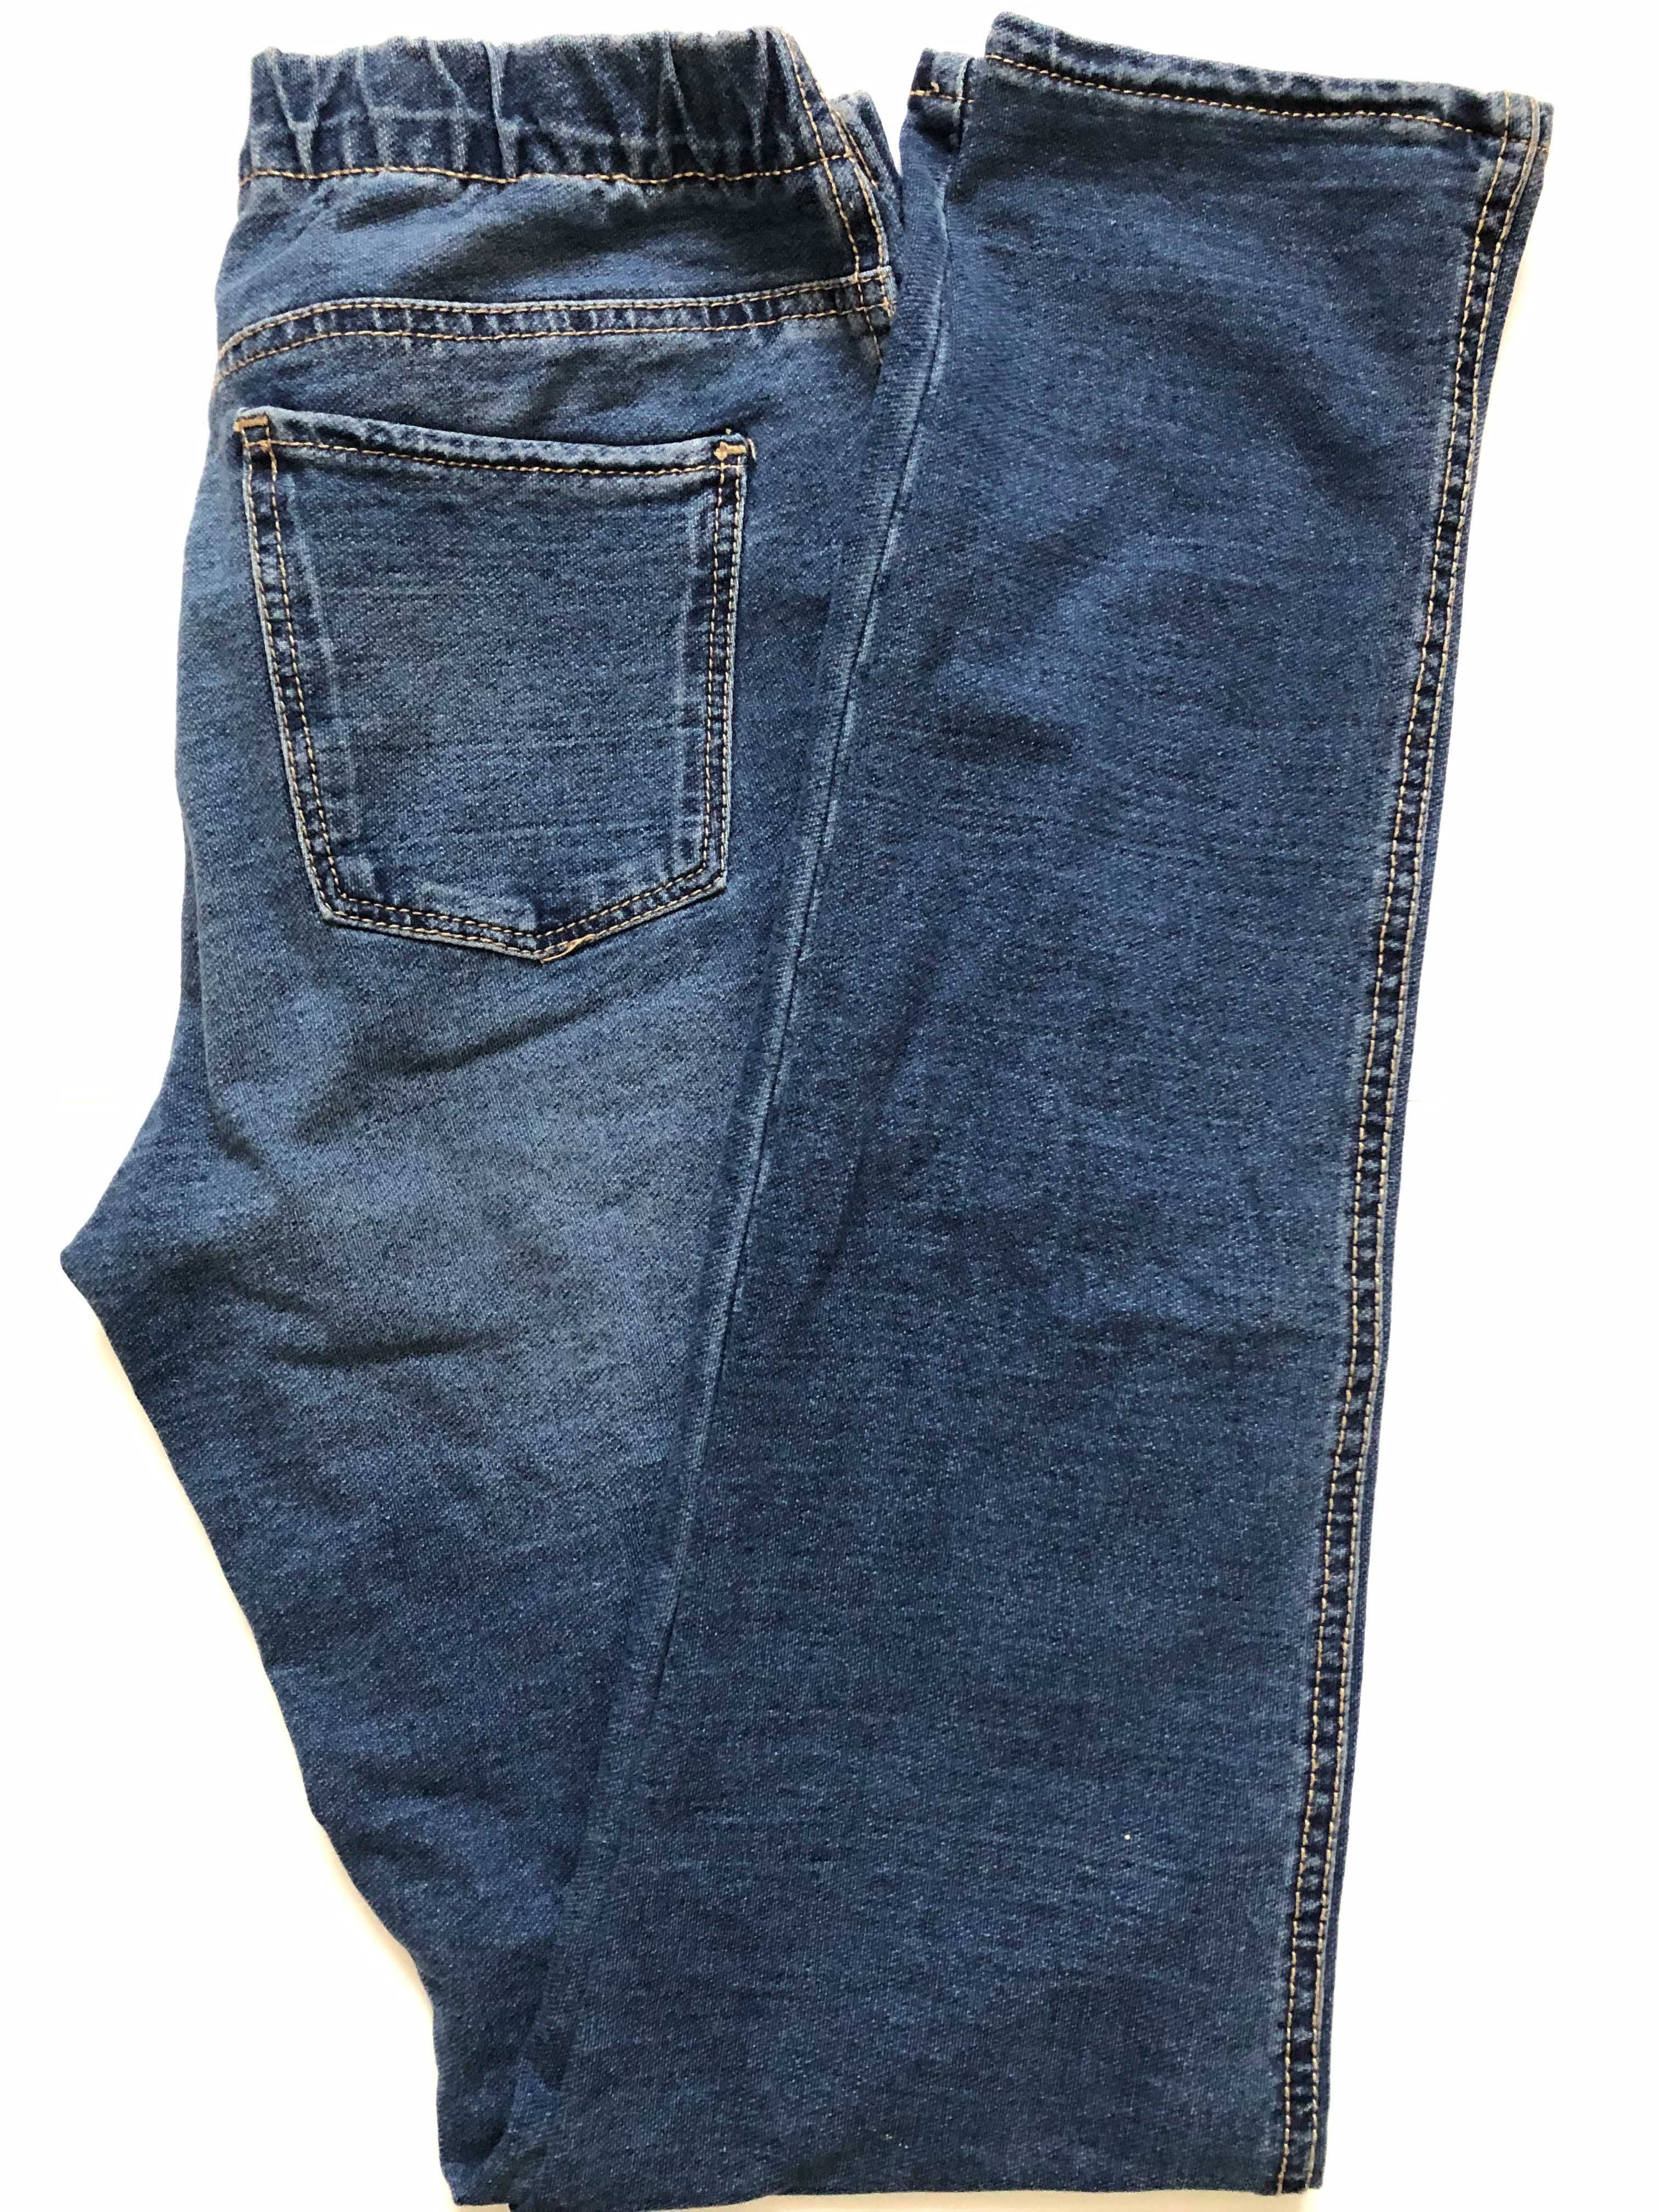 Legginsy imitujące jeansy rozm. 164